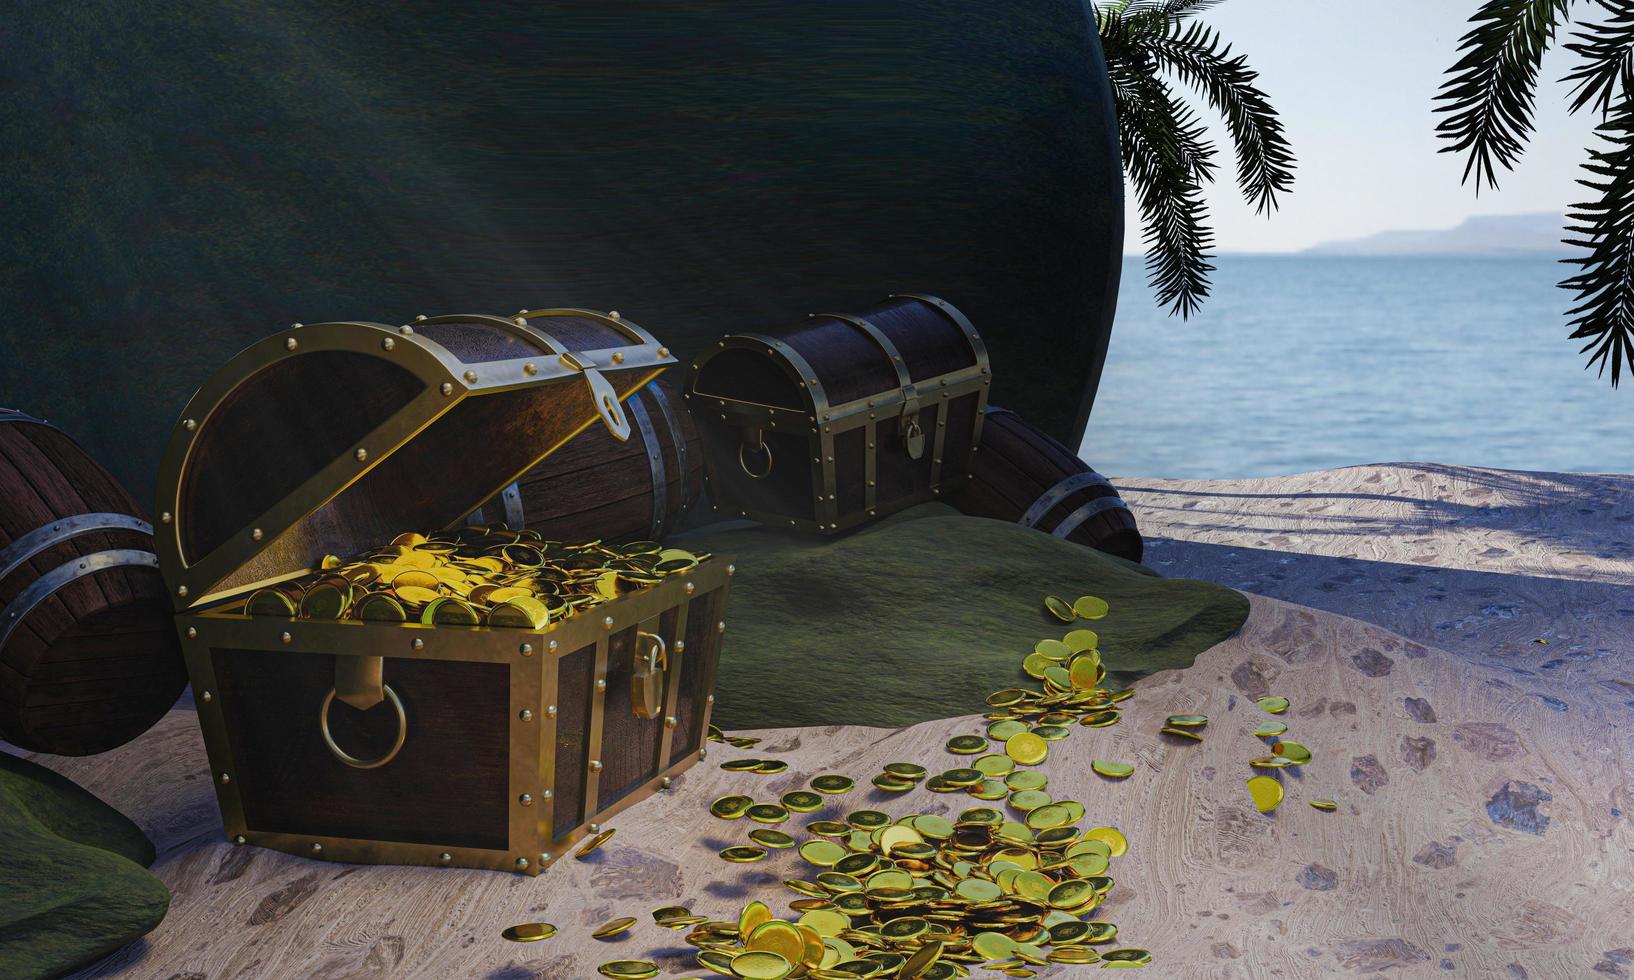 moedas de ouro são espalhadas de caixas ou baús de tesouro. baú de tesouro de madeira colocado na praia em uma ilha deserta no tema do tesouro pirata. renderização em 3D foto